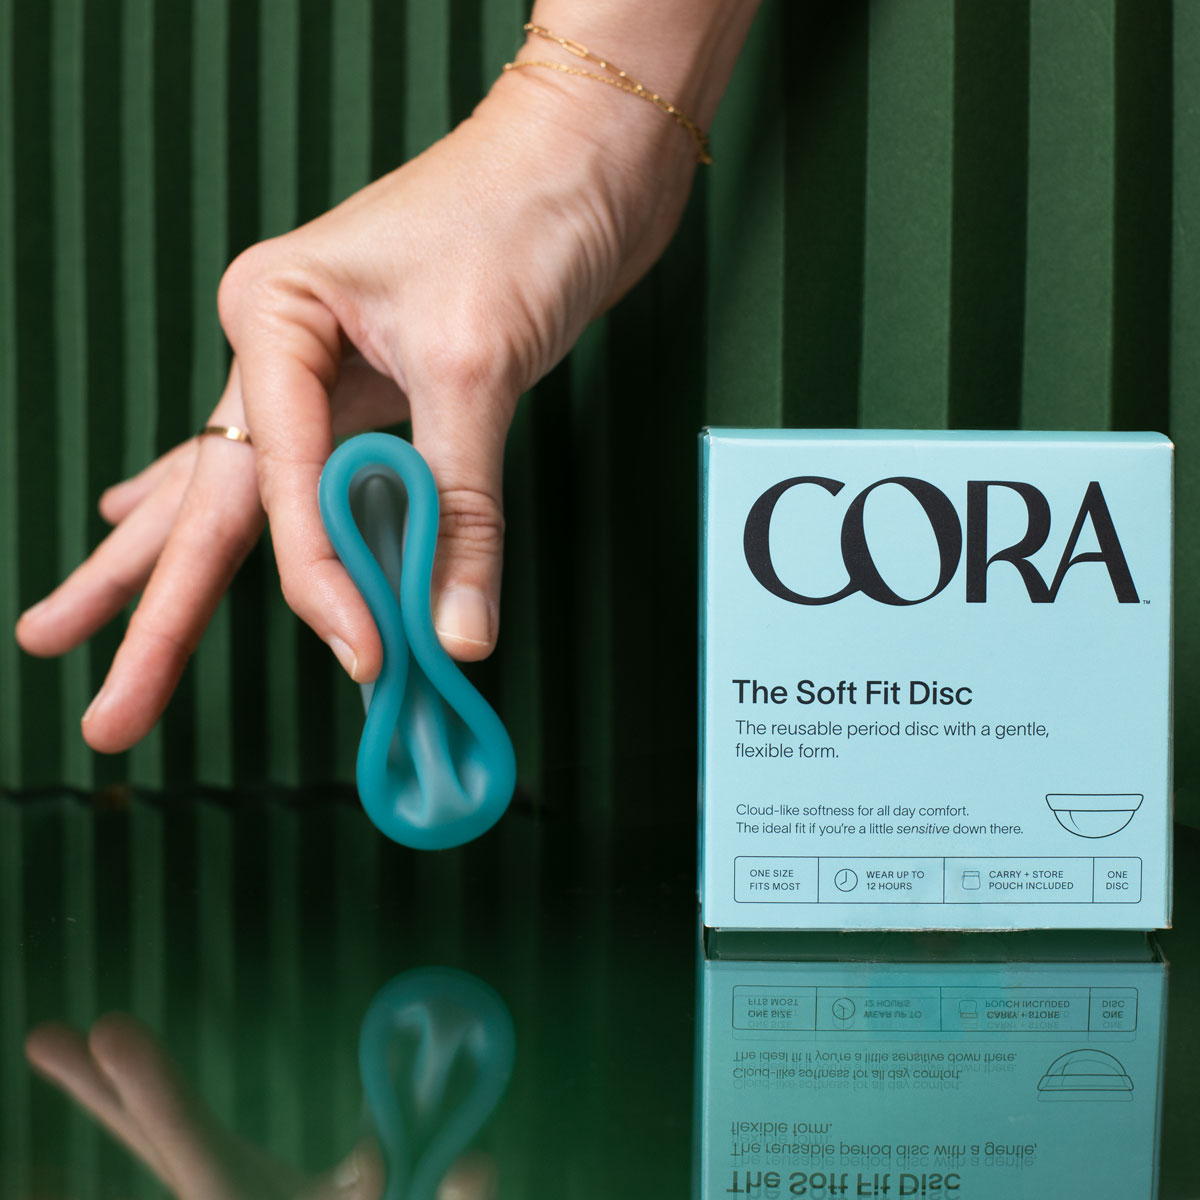 Cora Perfect Fit vs Soft Fit vs Flex Reusable Comparison Review